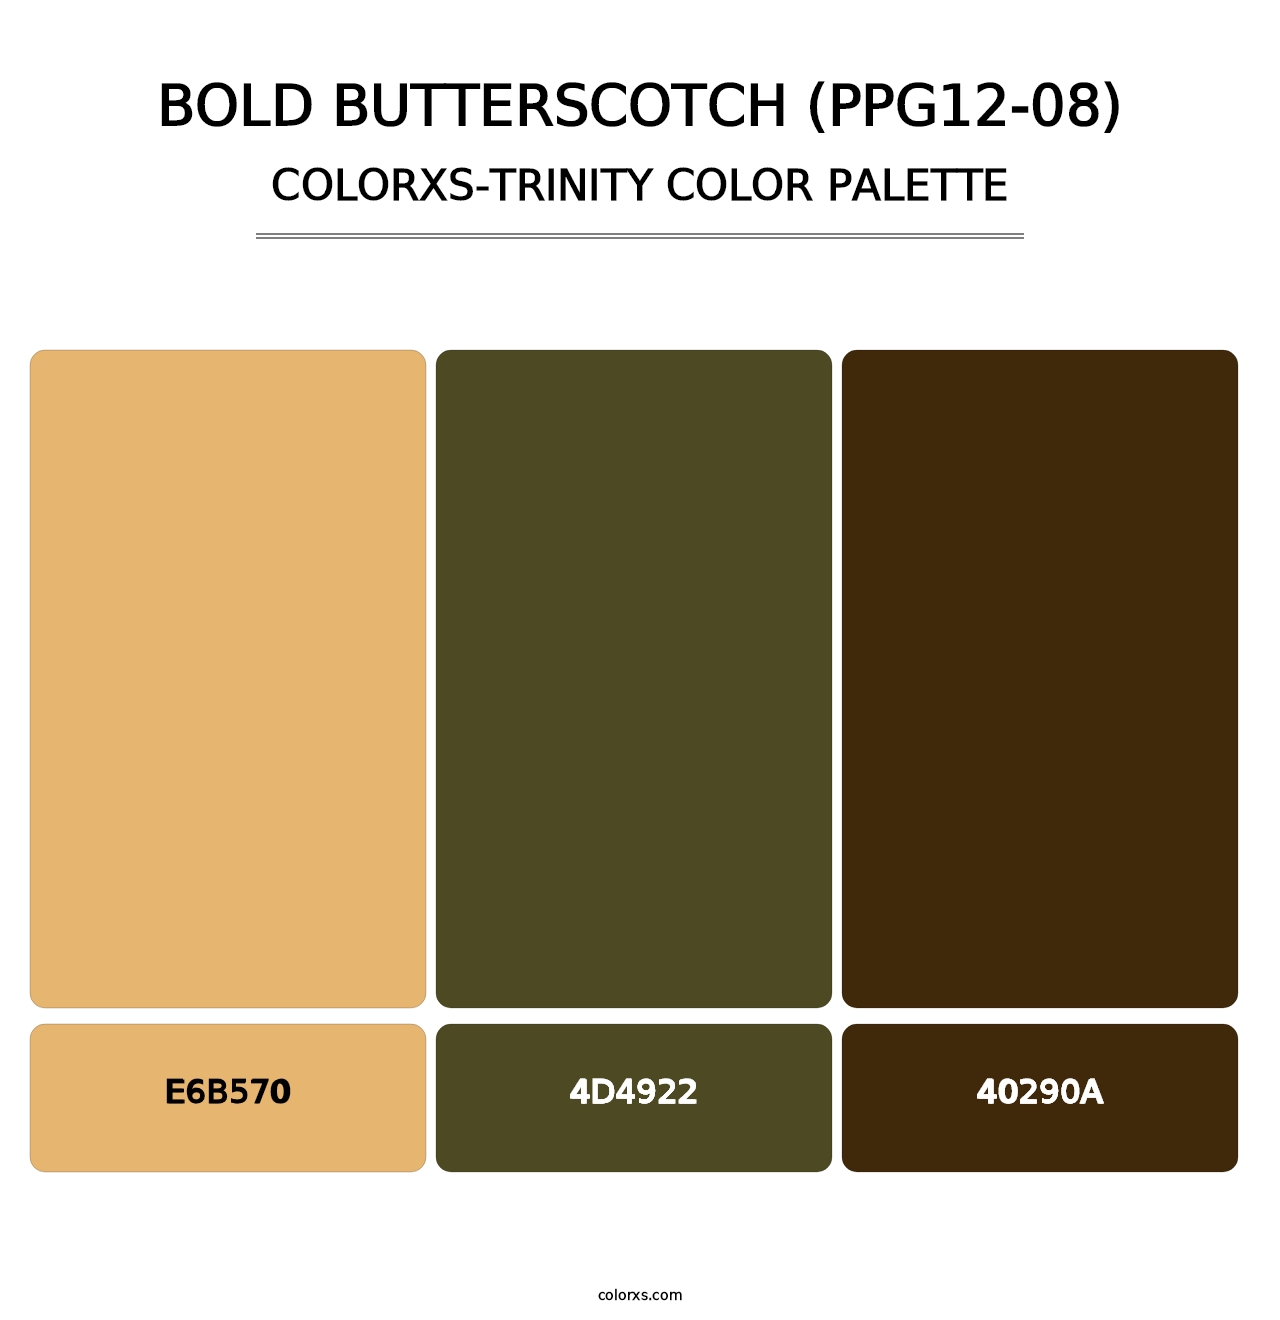 Bold Butterscotch (PPG12-08) - Colorxs Trinity Palette